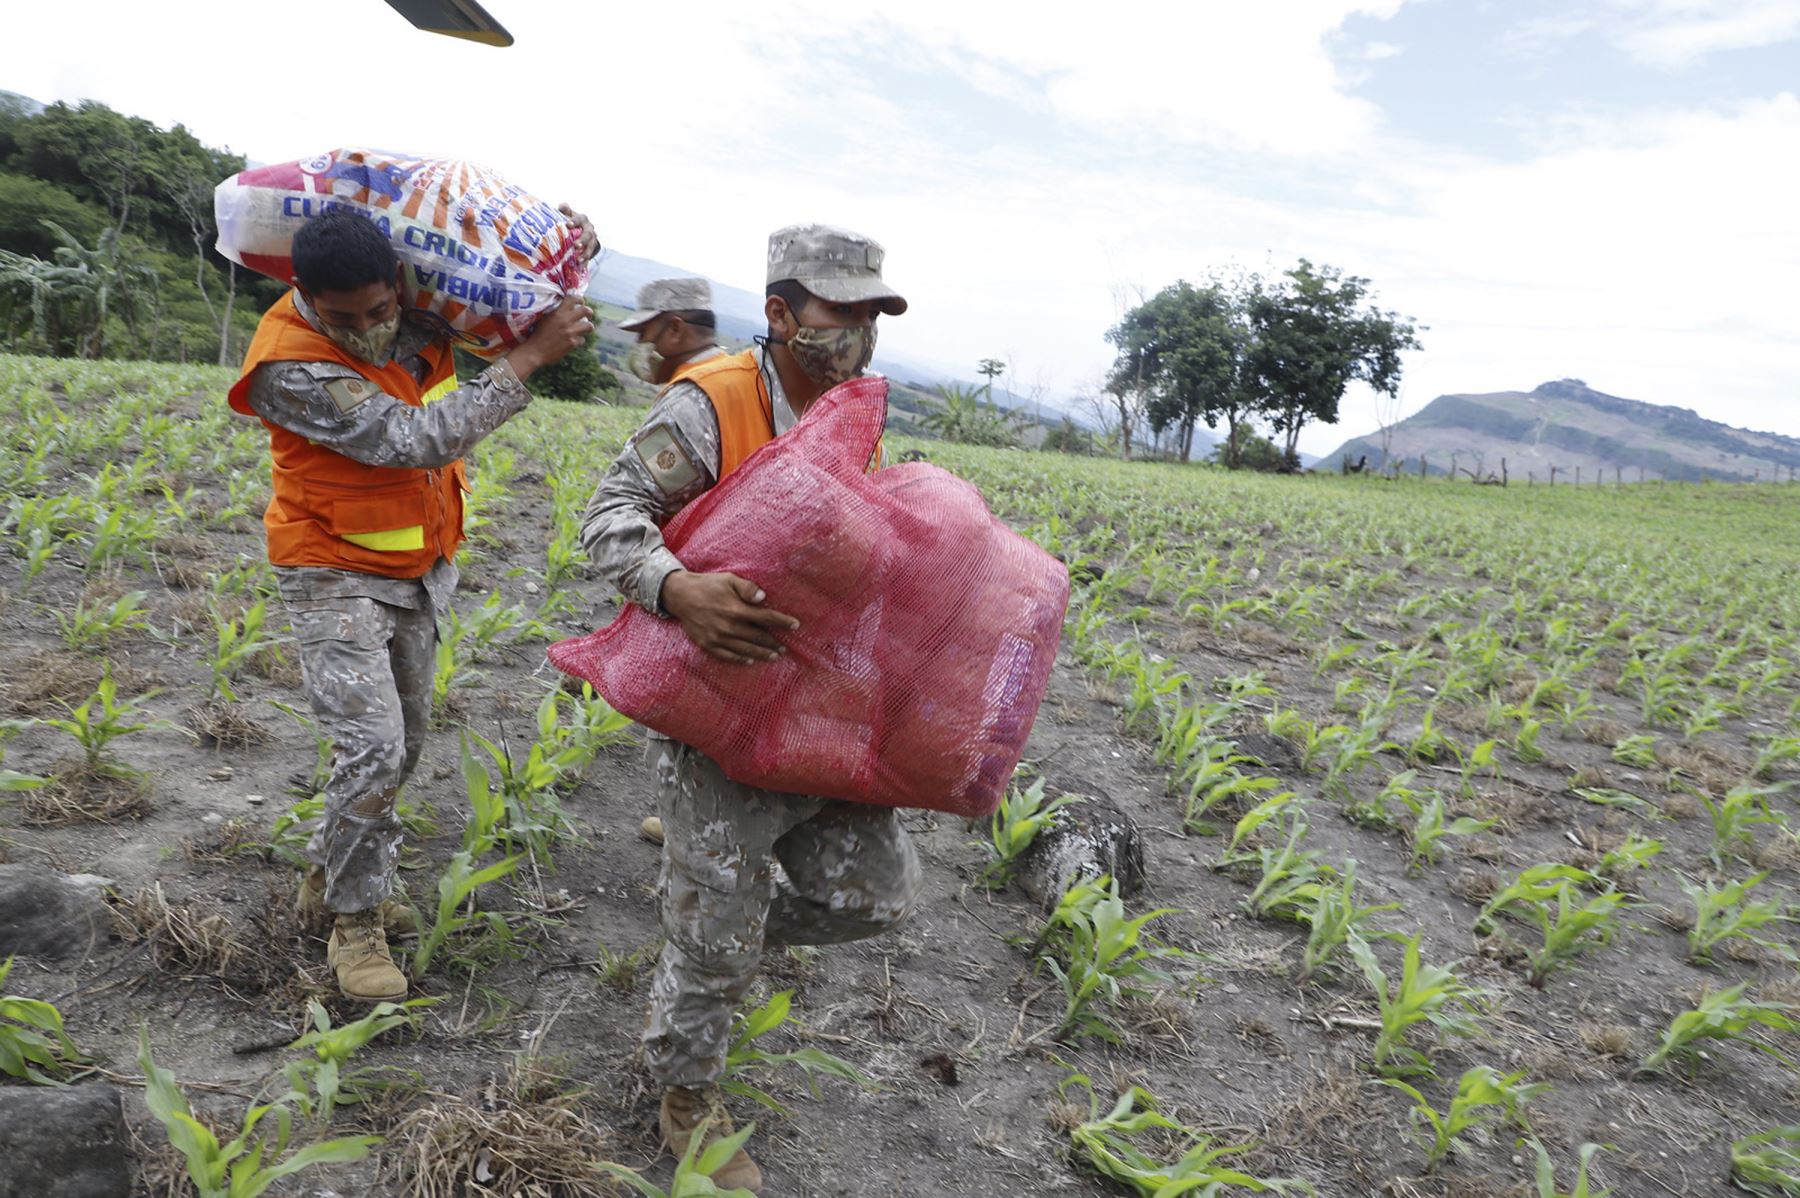 El ministro de Comercio Exterior y turismo, Roberto Sánchez, llegó a Utcubamba, en la región Amazonas, para supervisar las acciones de apoyo a los damnificados por el terremoto de magnitud 7.5 ocurrido el 28 de noviembre. Foto: ANDINA/Mincetur